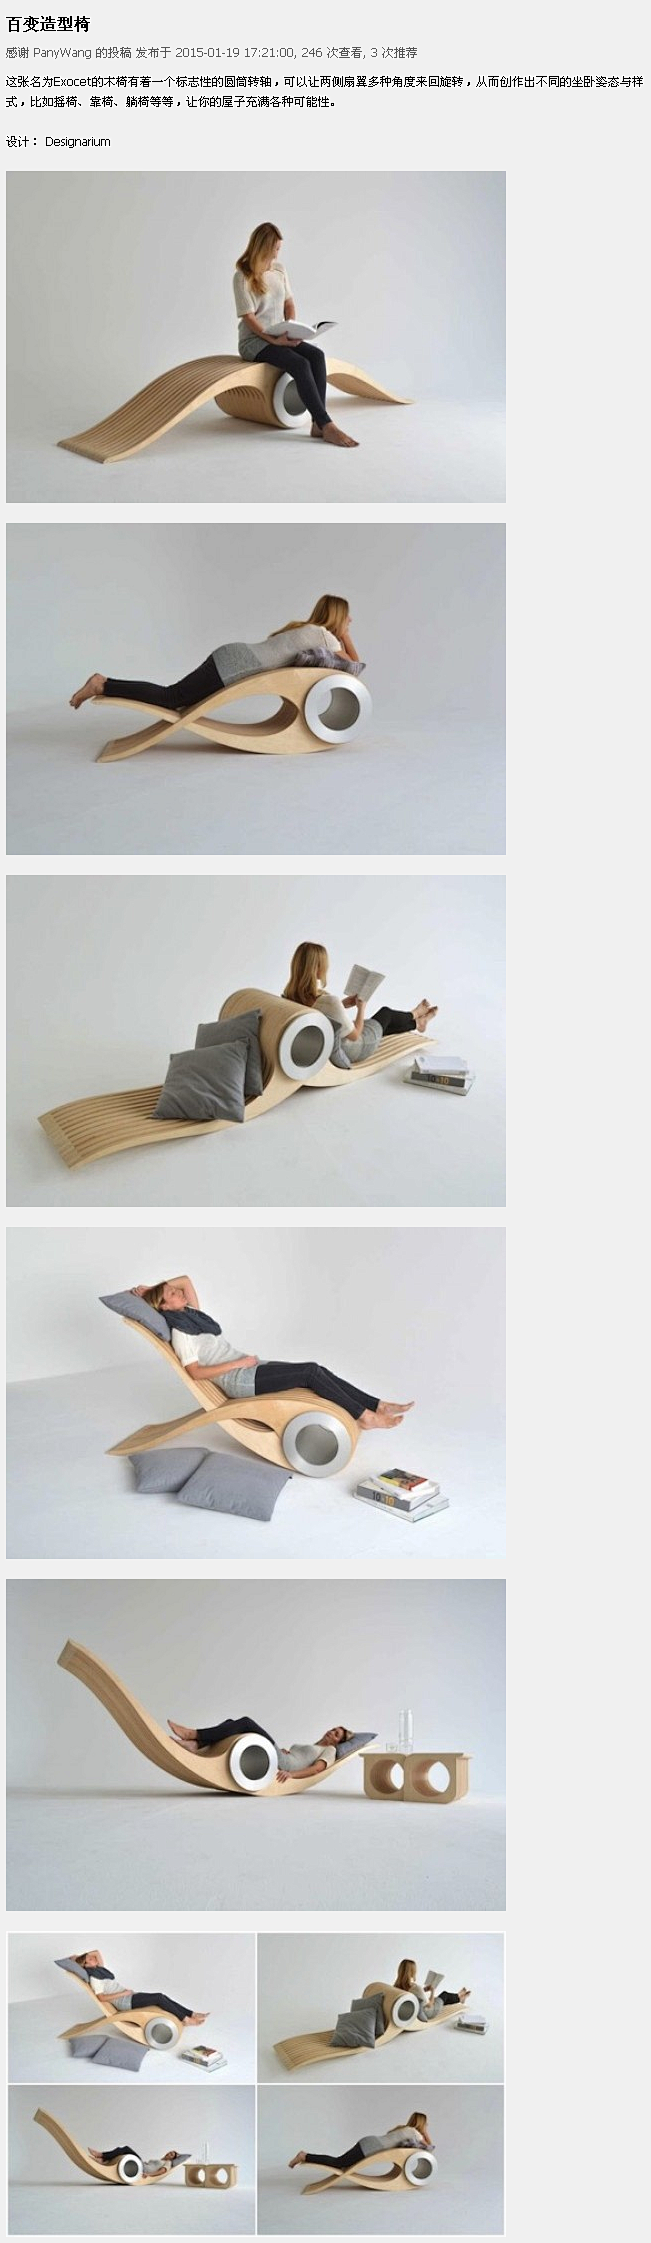 百变造型椅 - 创意设计 - 设计博闻 ...